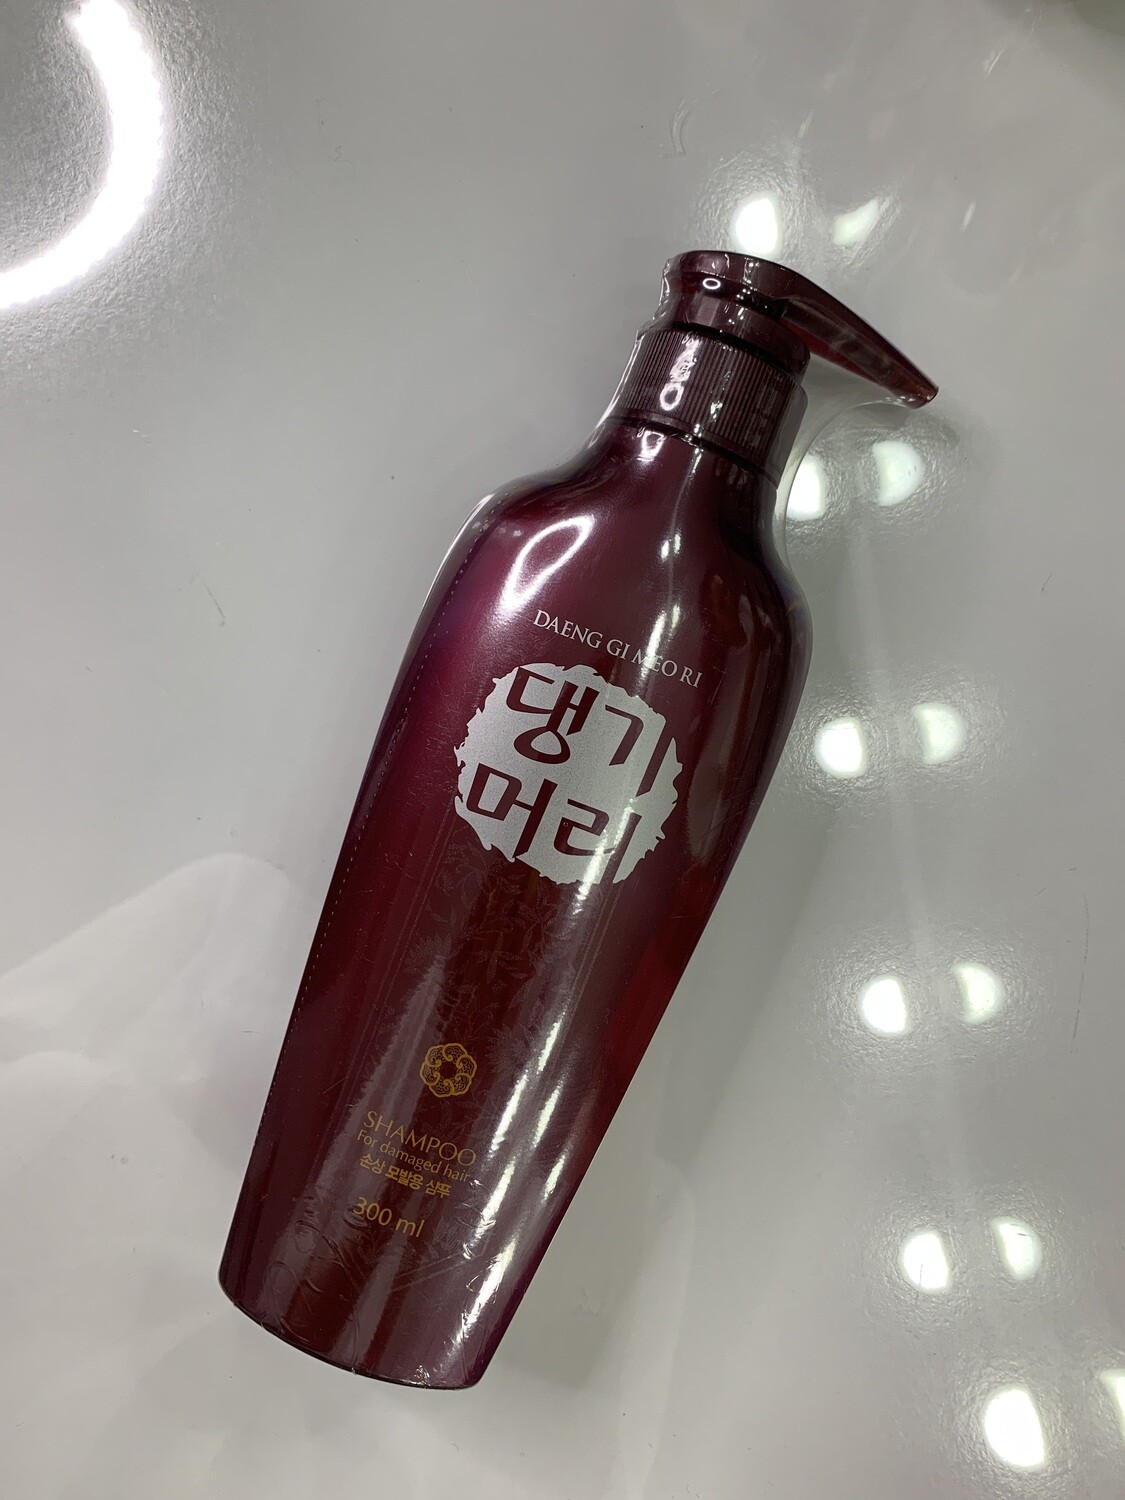 Шампунь для повреждённых волос Daeng Gi Meo Ri Shampoo For Damaged Hair